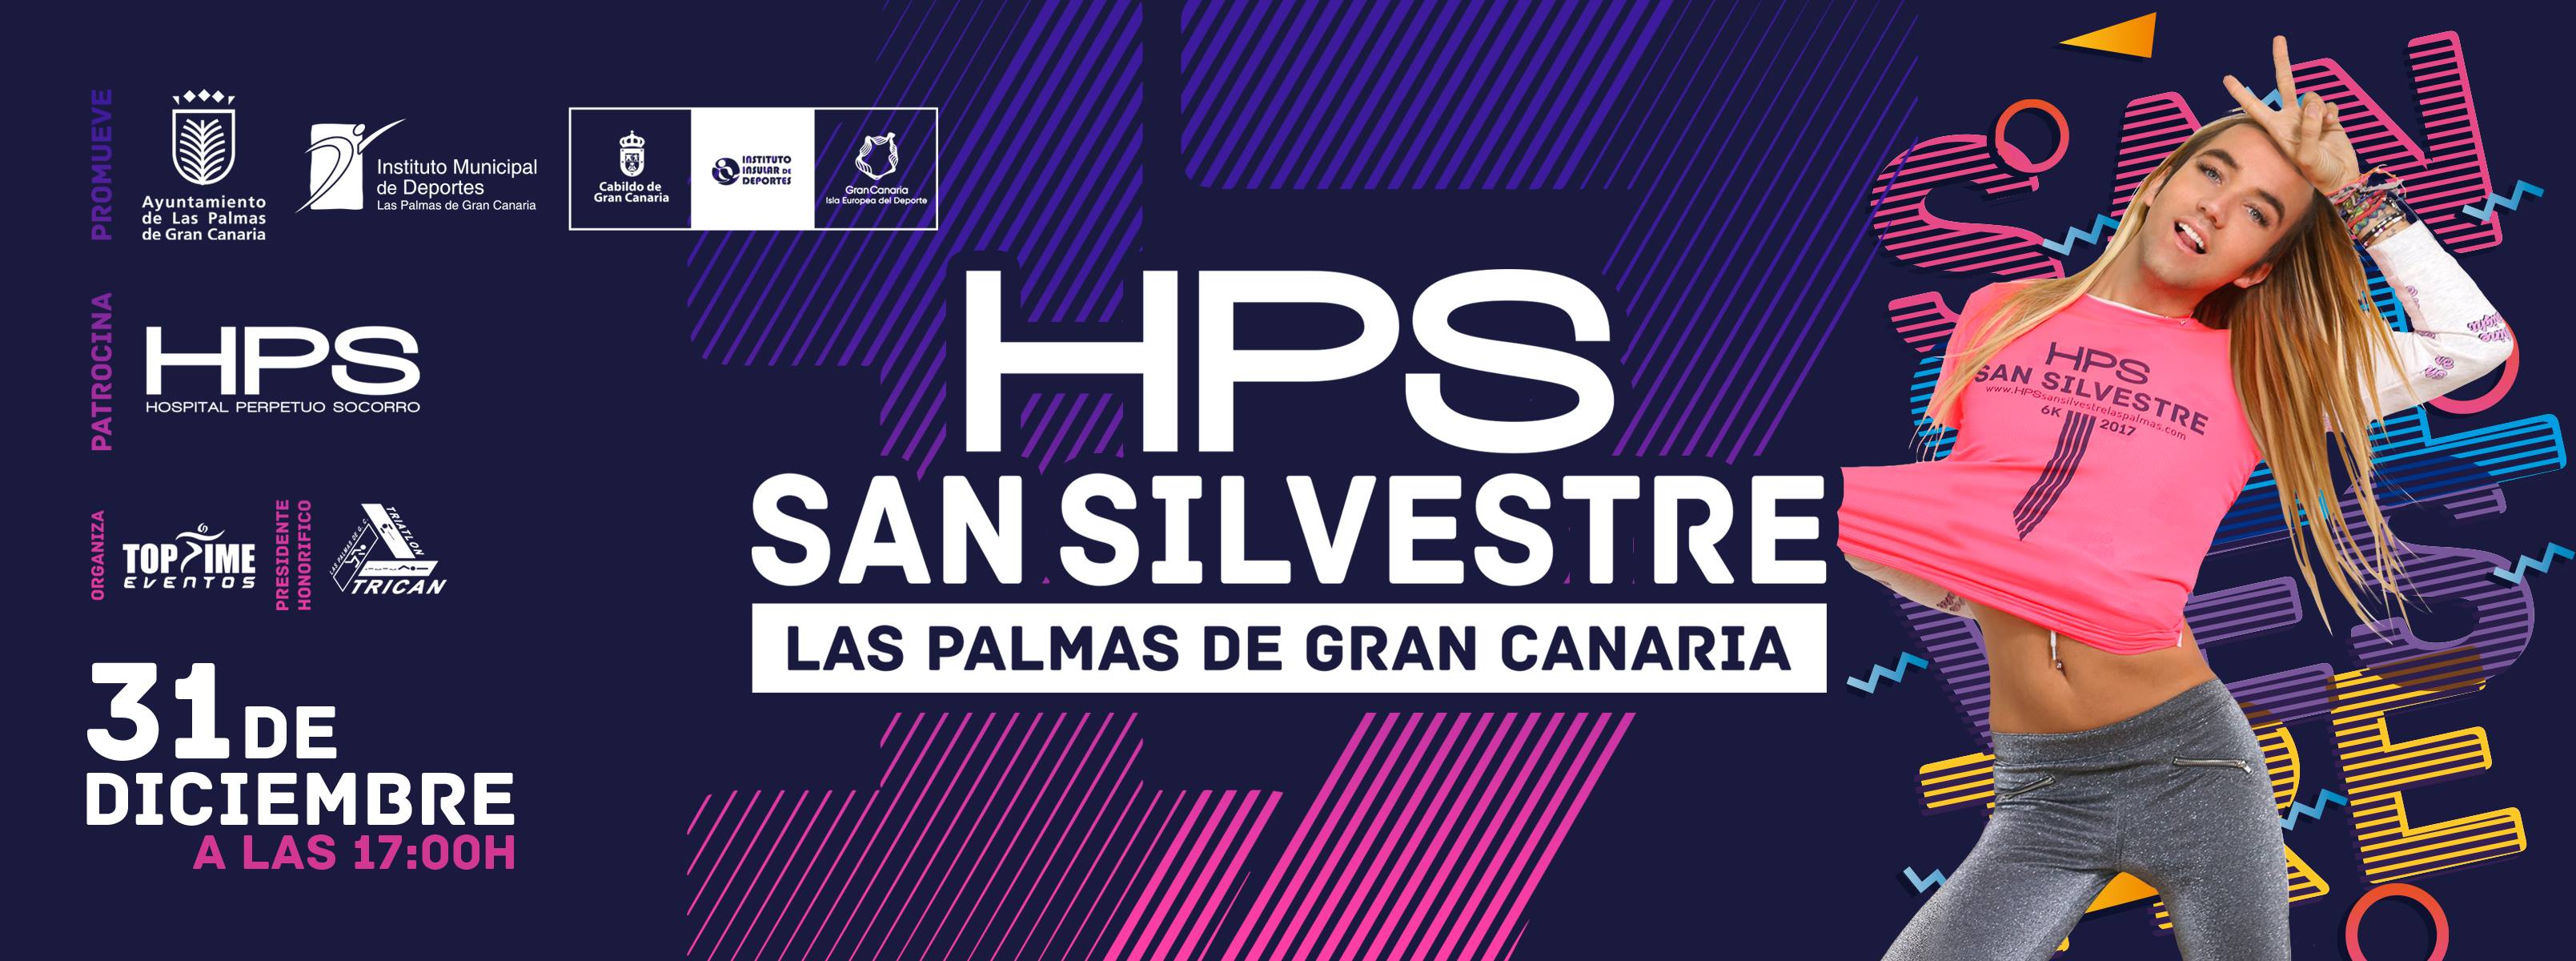 Lada roble A menudo hablado Termina el año participando en la HPS San Silvestre Las Palmas de GC 2017